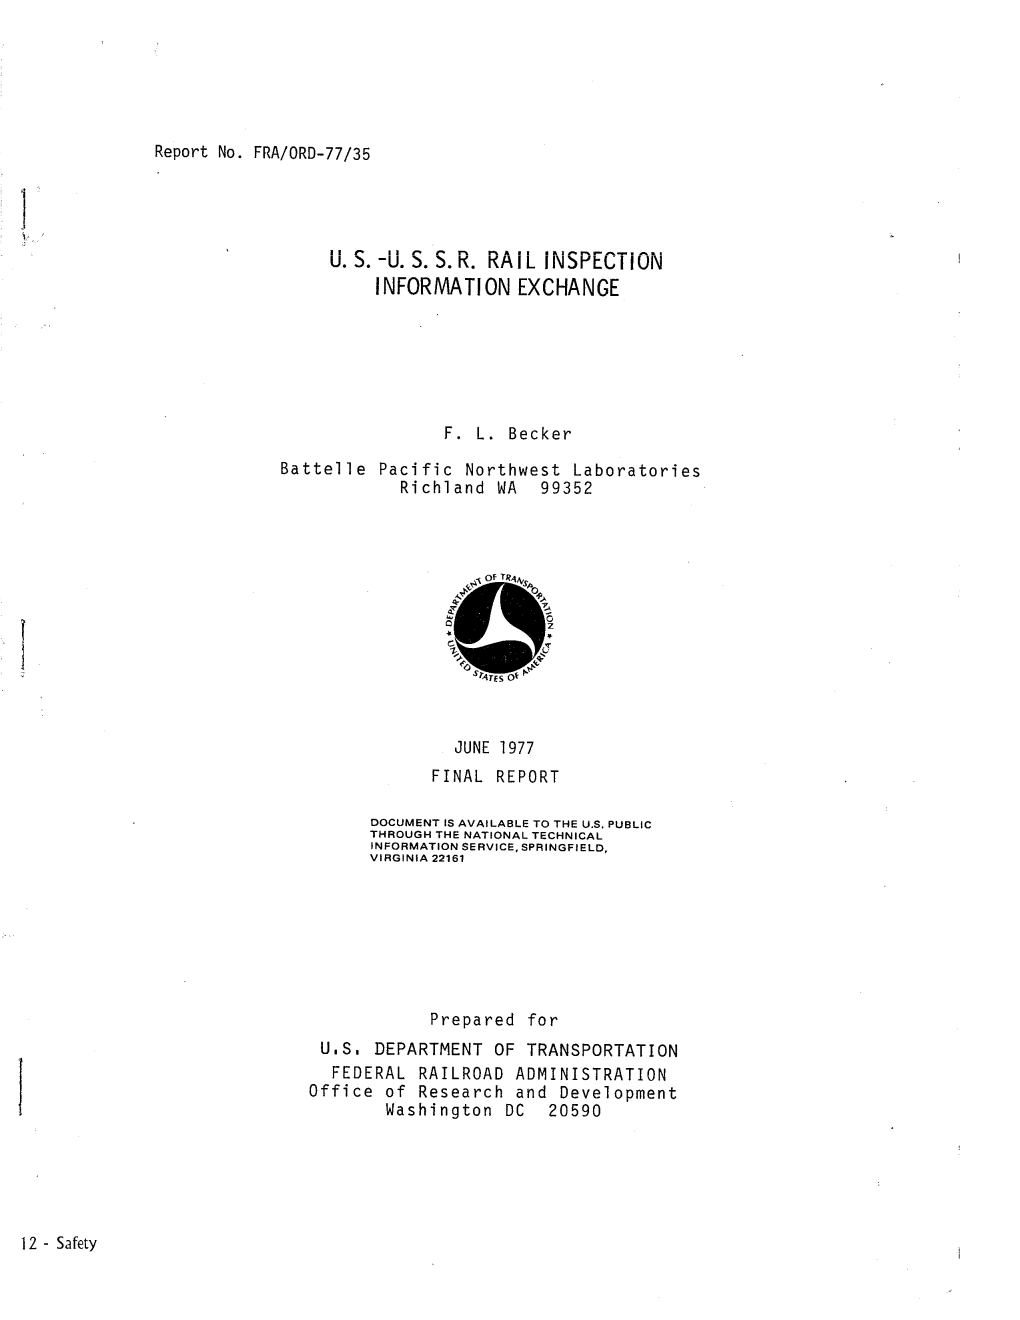 US-USSR Rail Inspection I NFORMA Tl on EXCHANGE